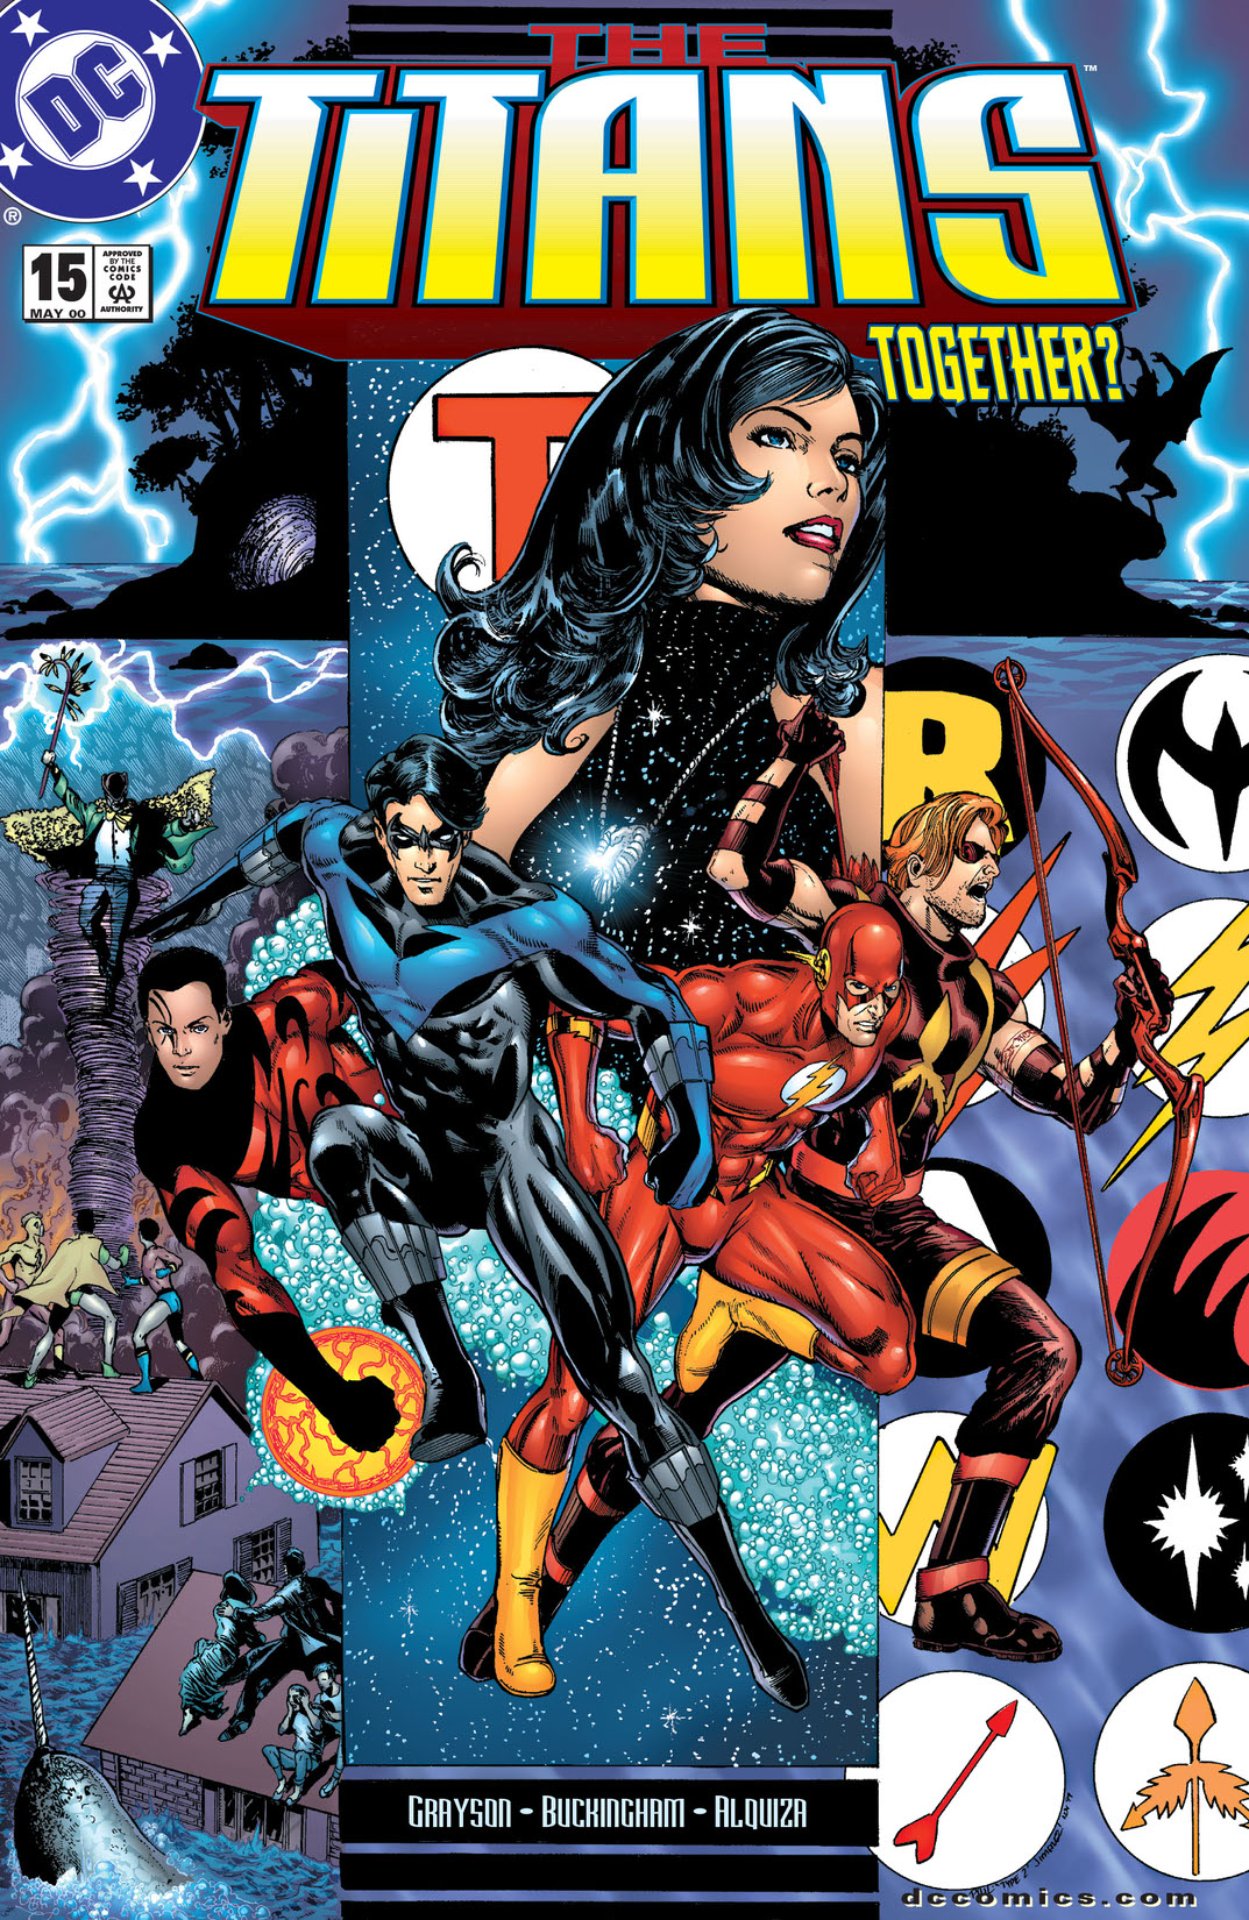 The Titans #15 cover